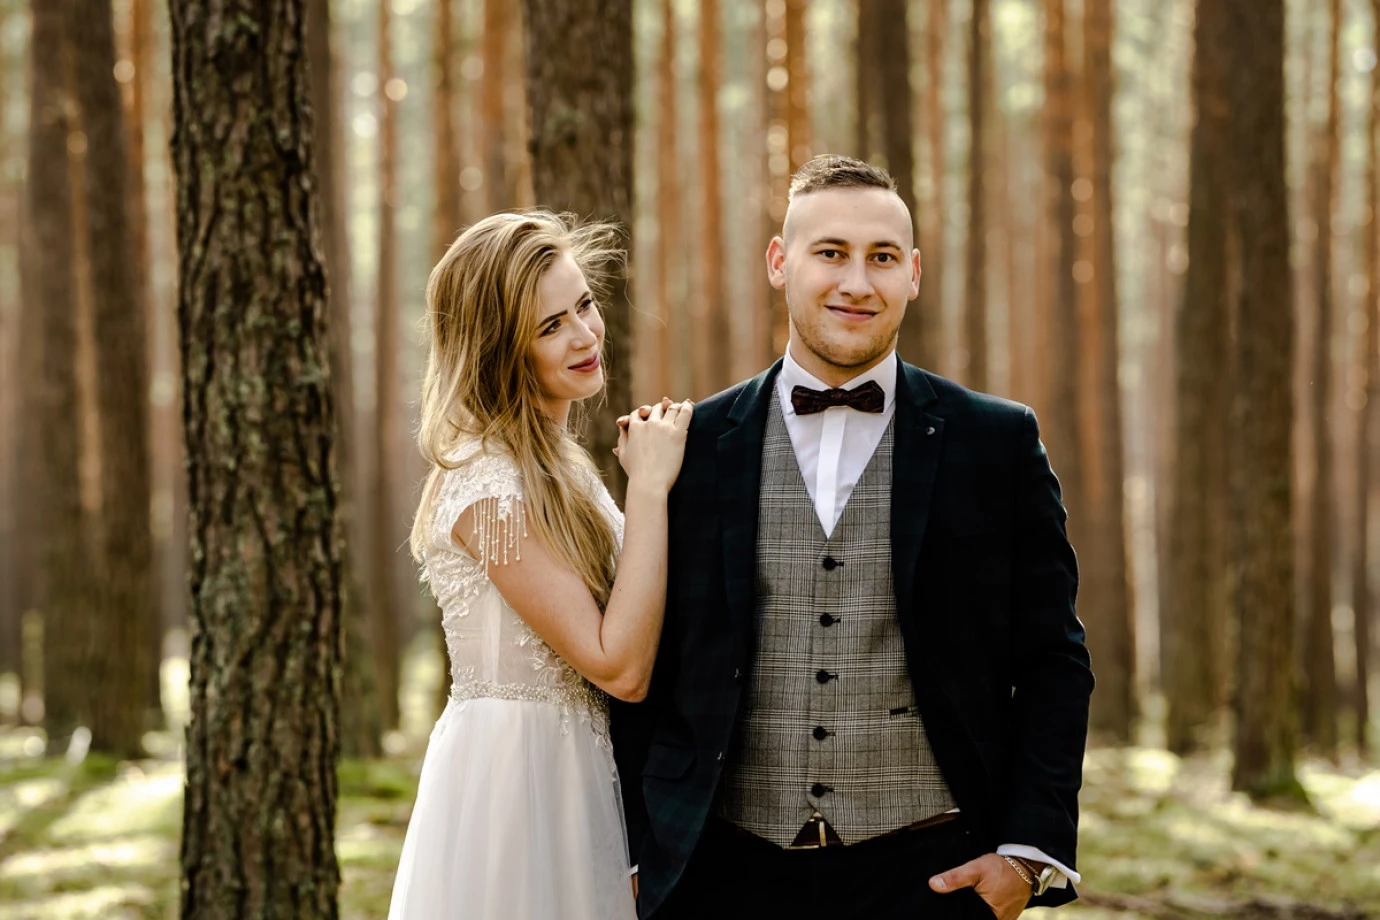 zdjęcia jaroslaw fotograf piotr-drabik-wedding-photography portfolio zdjecia slubne inspiracje wesele plener slubny sesja slubna